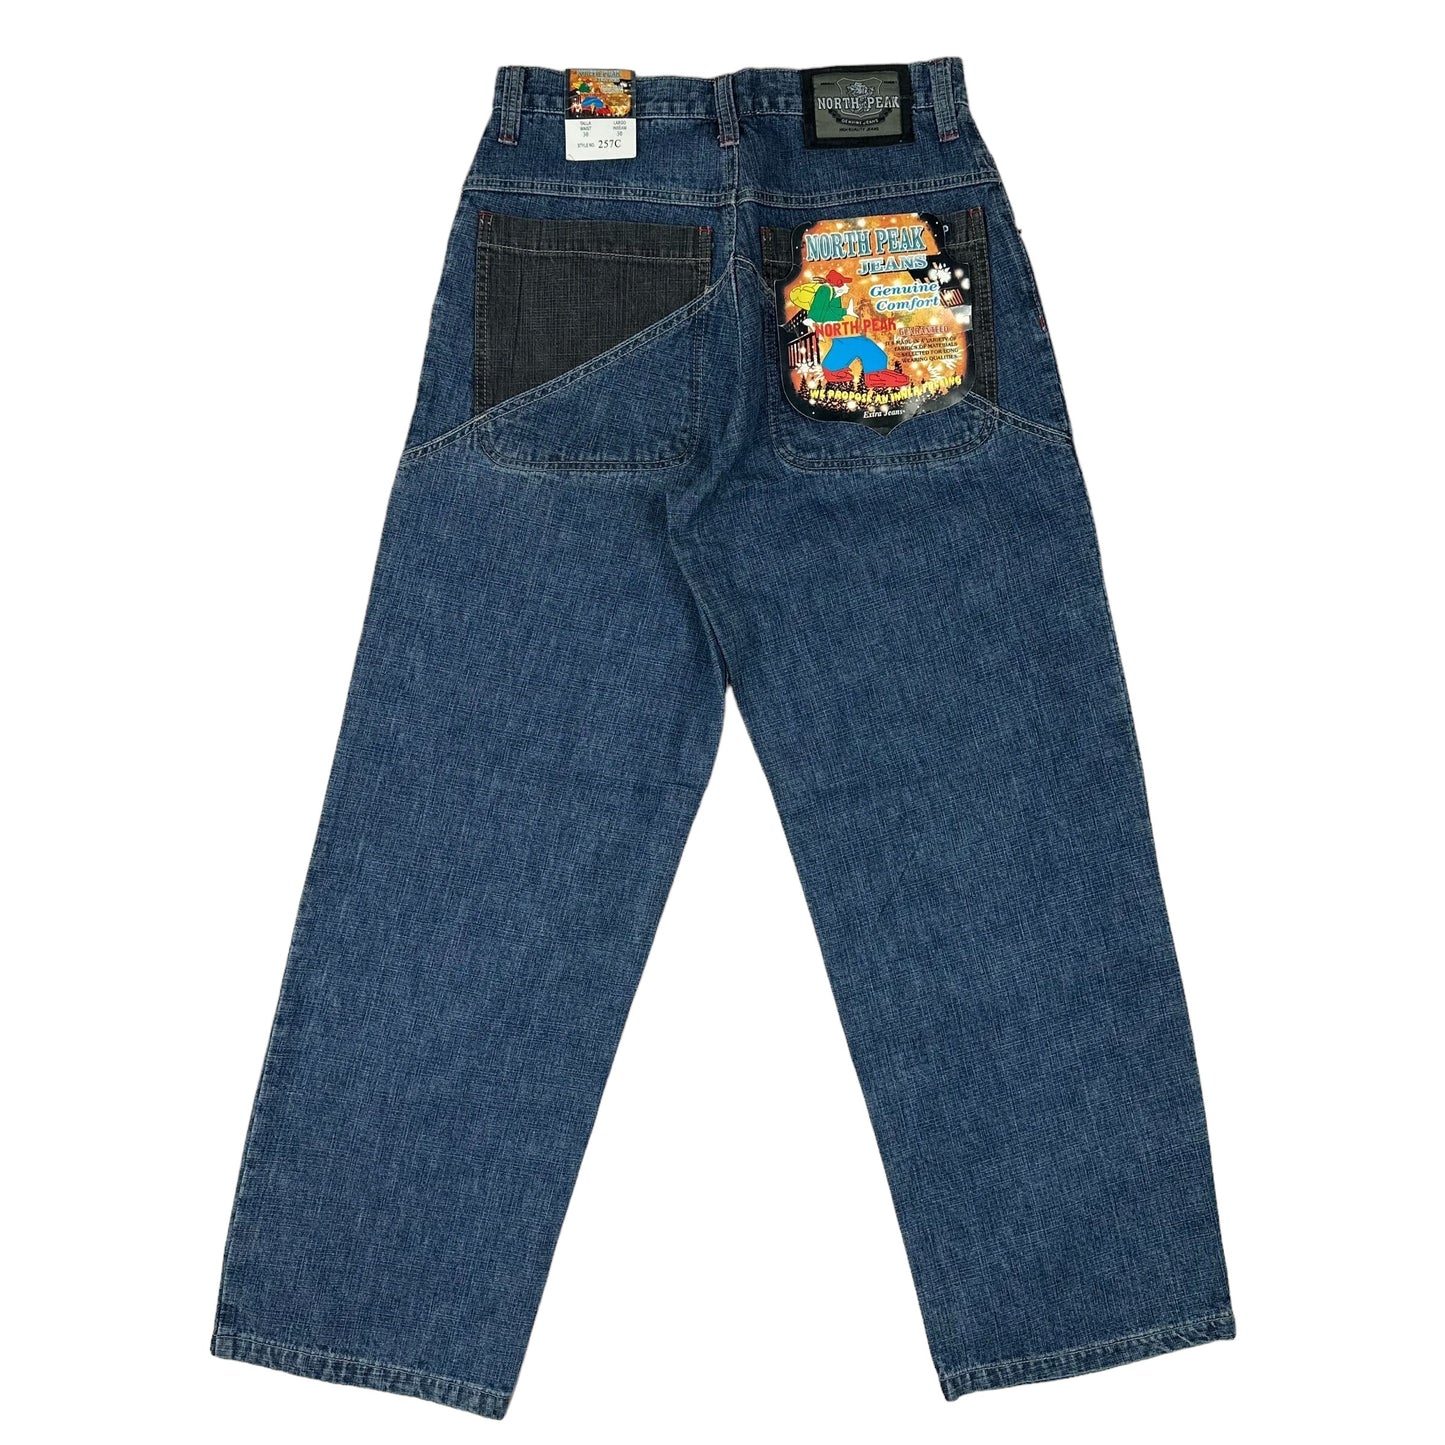 Vintage Y2K North Peak Blue Denim Black Pocket Pants